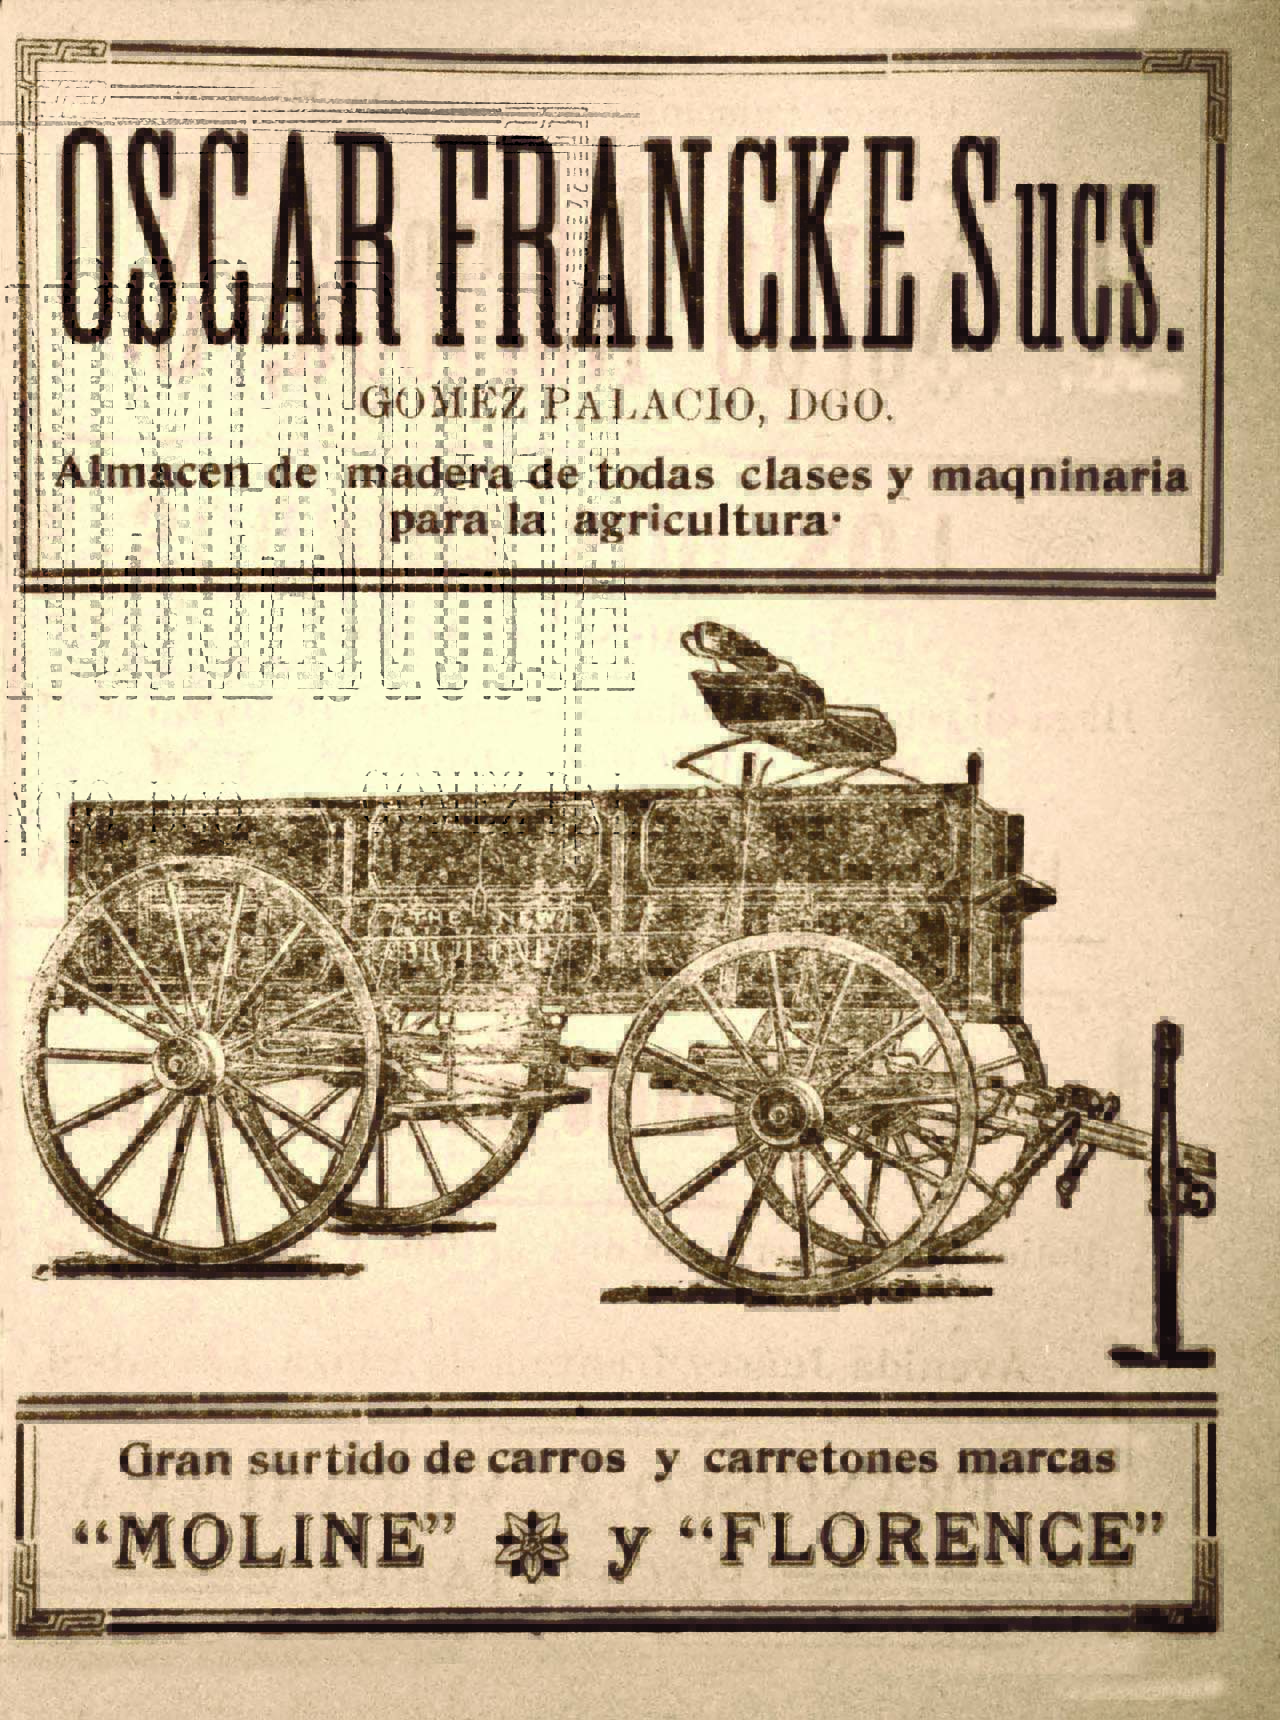 Carretones Oscar Francke. Directorio Comercial  de Torreón, 1905.
